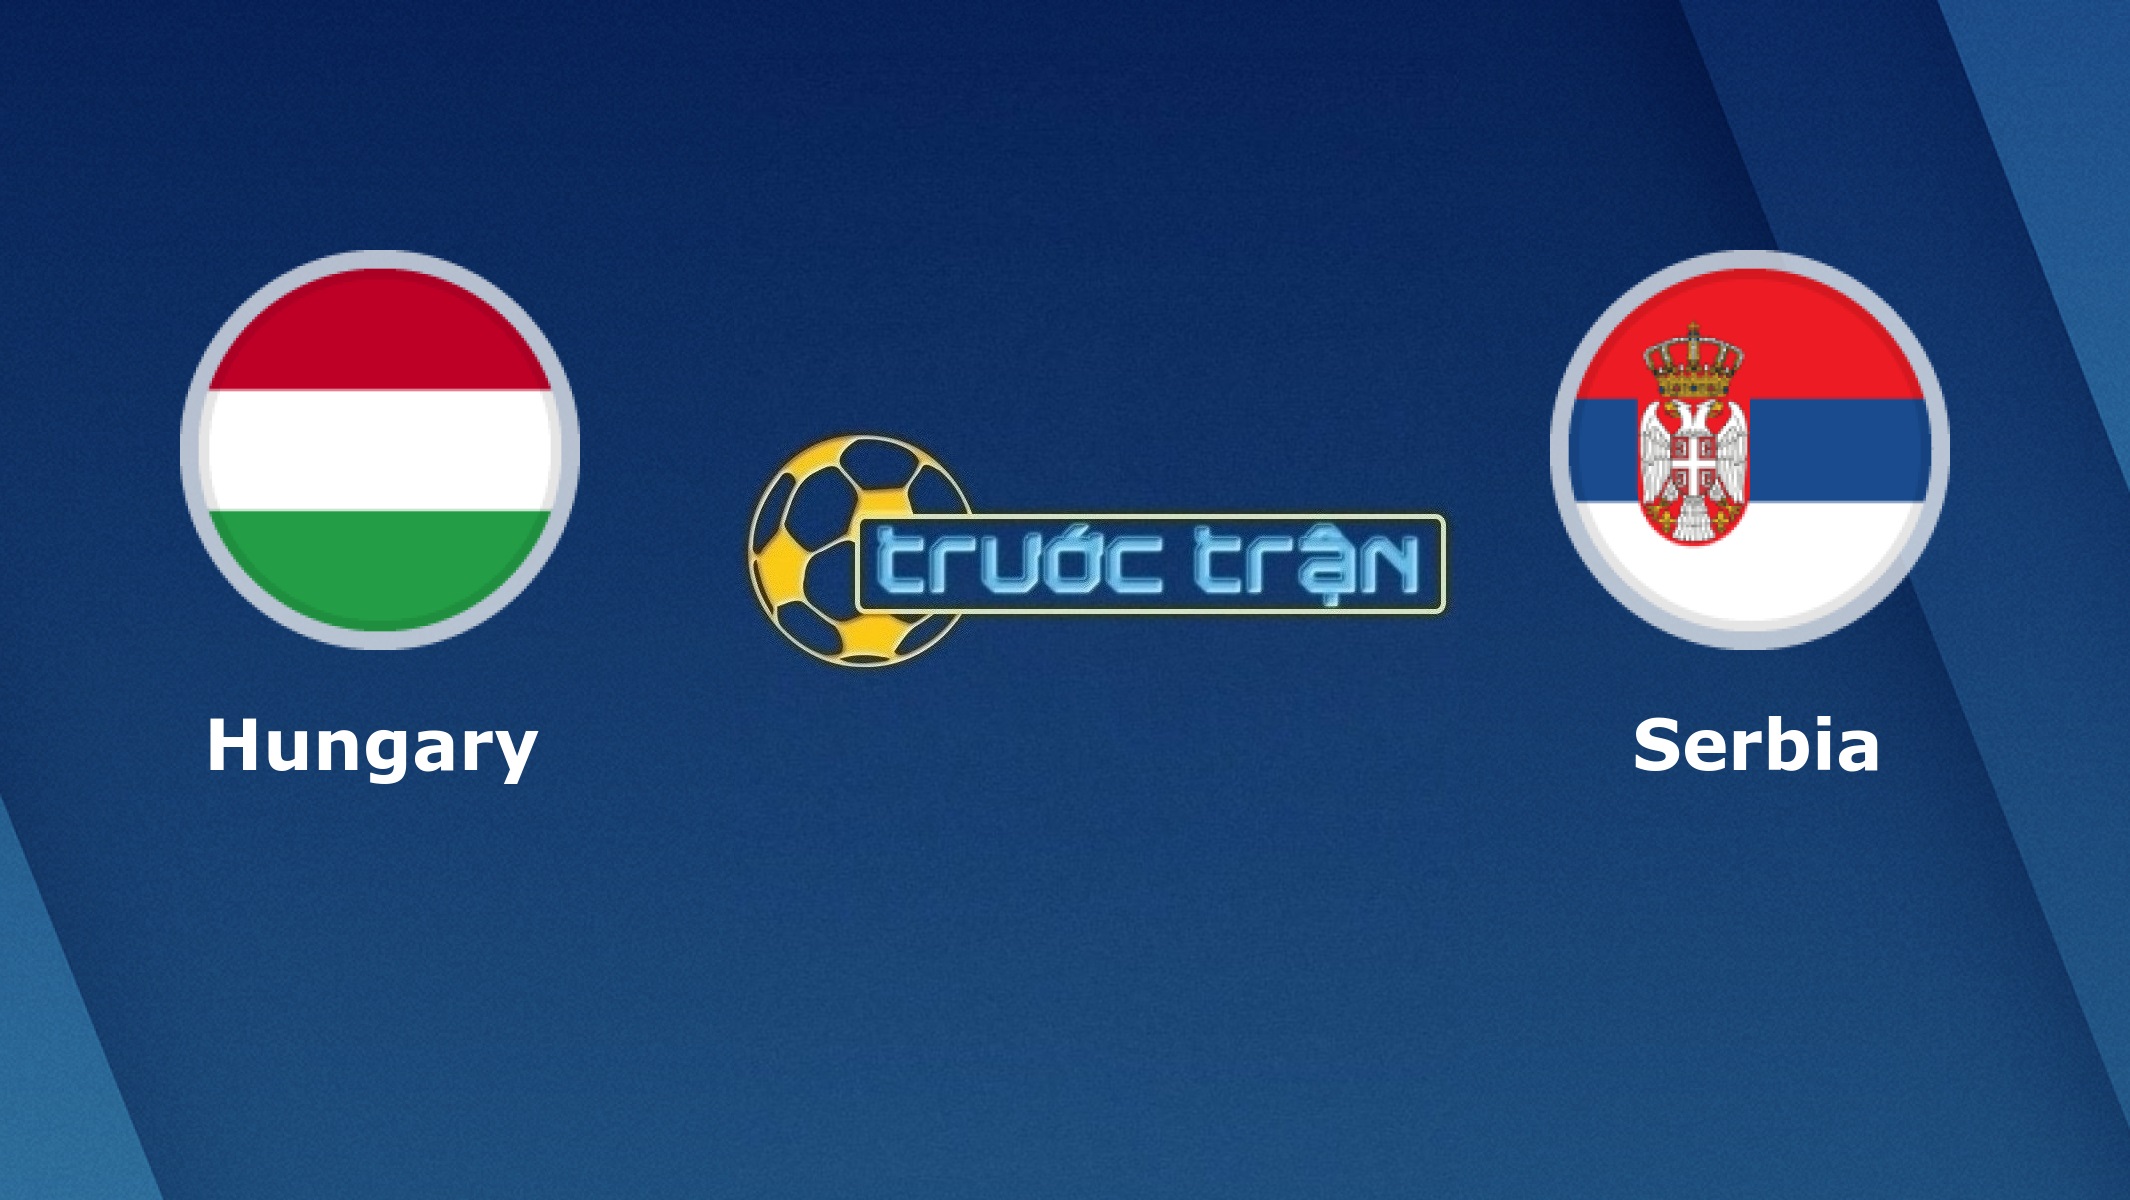 Hungary vs Serbia – Tip kèo bóng đá hôm nay – 02h45 16/11/2020